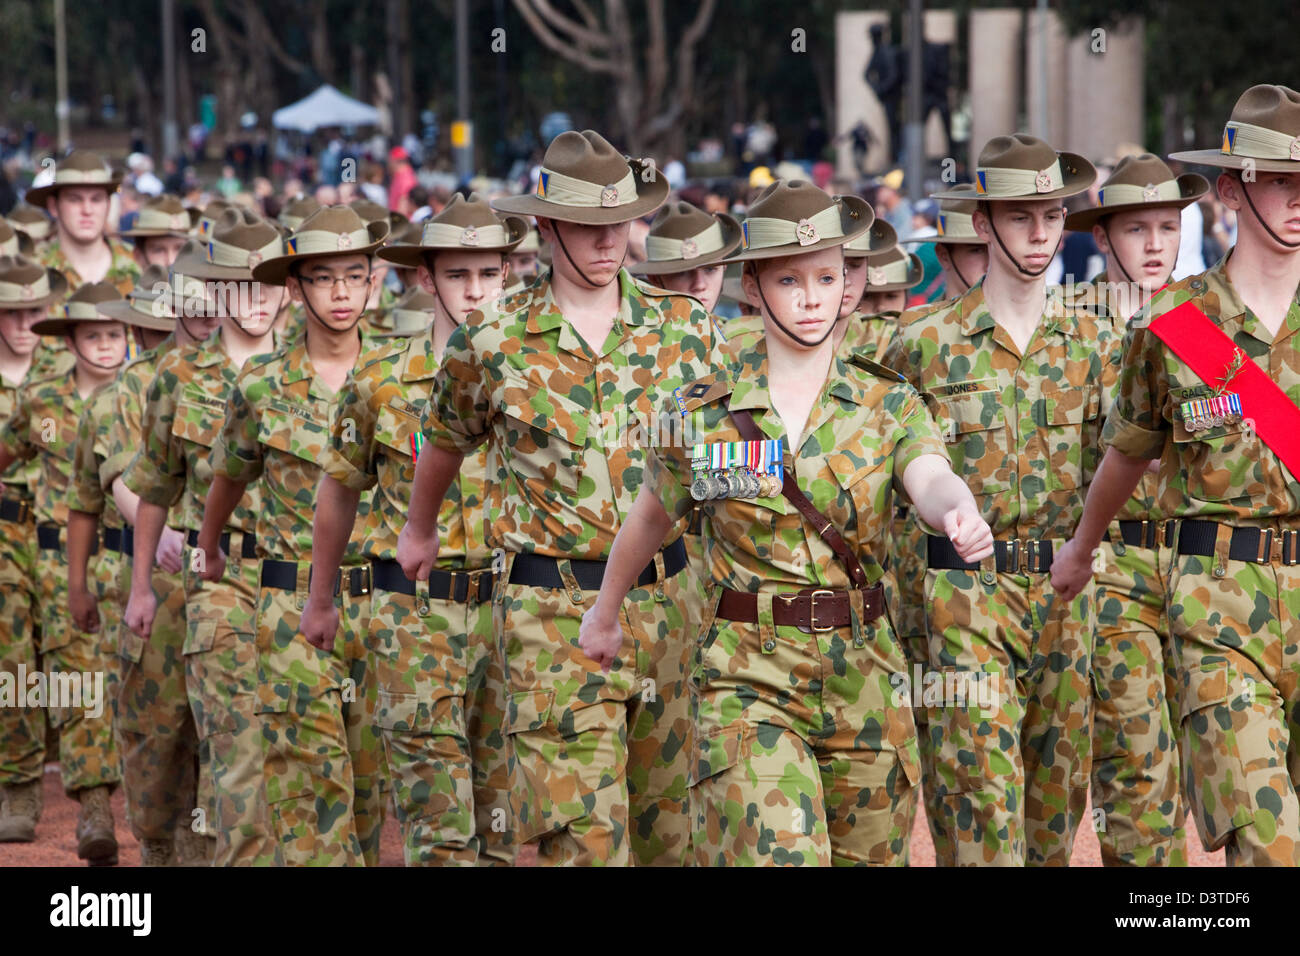 Los jóvenes militares marchando en el desfile durante el Día Anzac conmemoraciones. Canberra, Australian Capital Territory (ACT), Australia Foto de stock